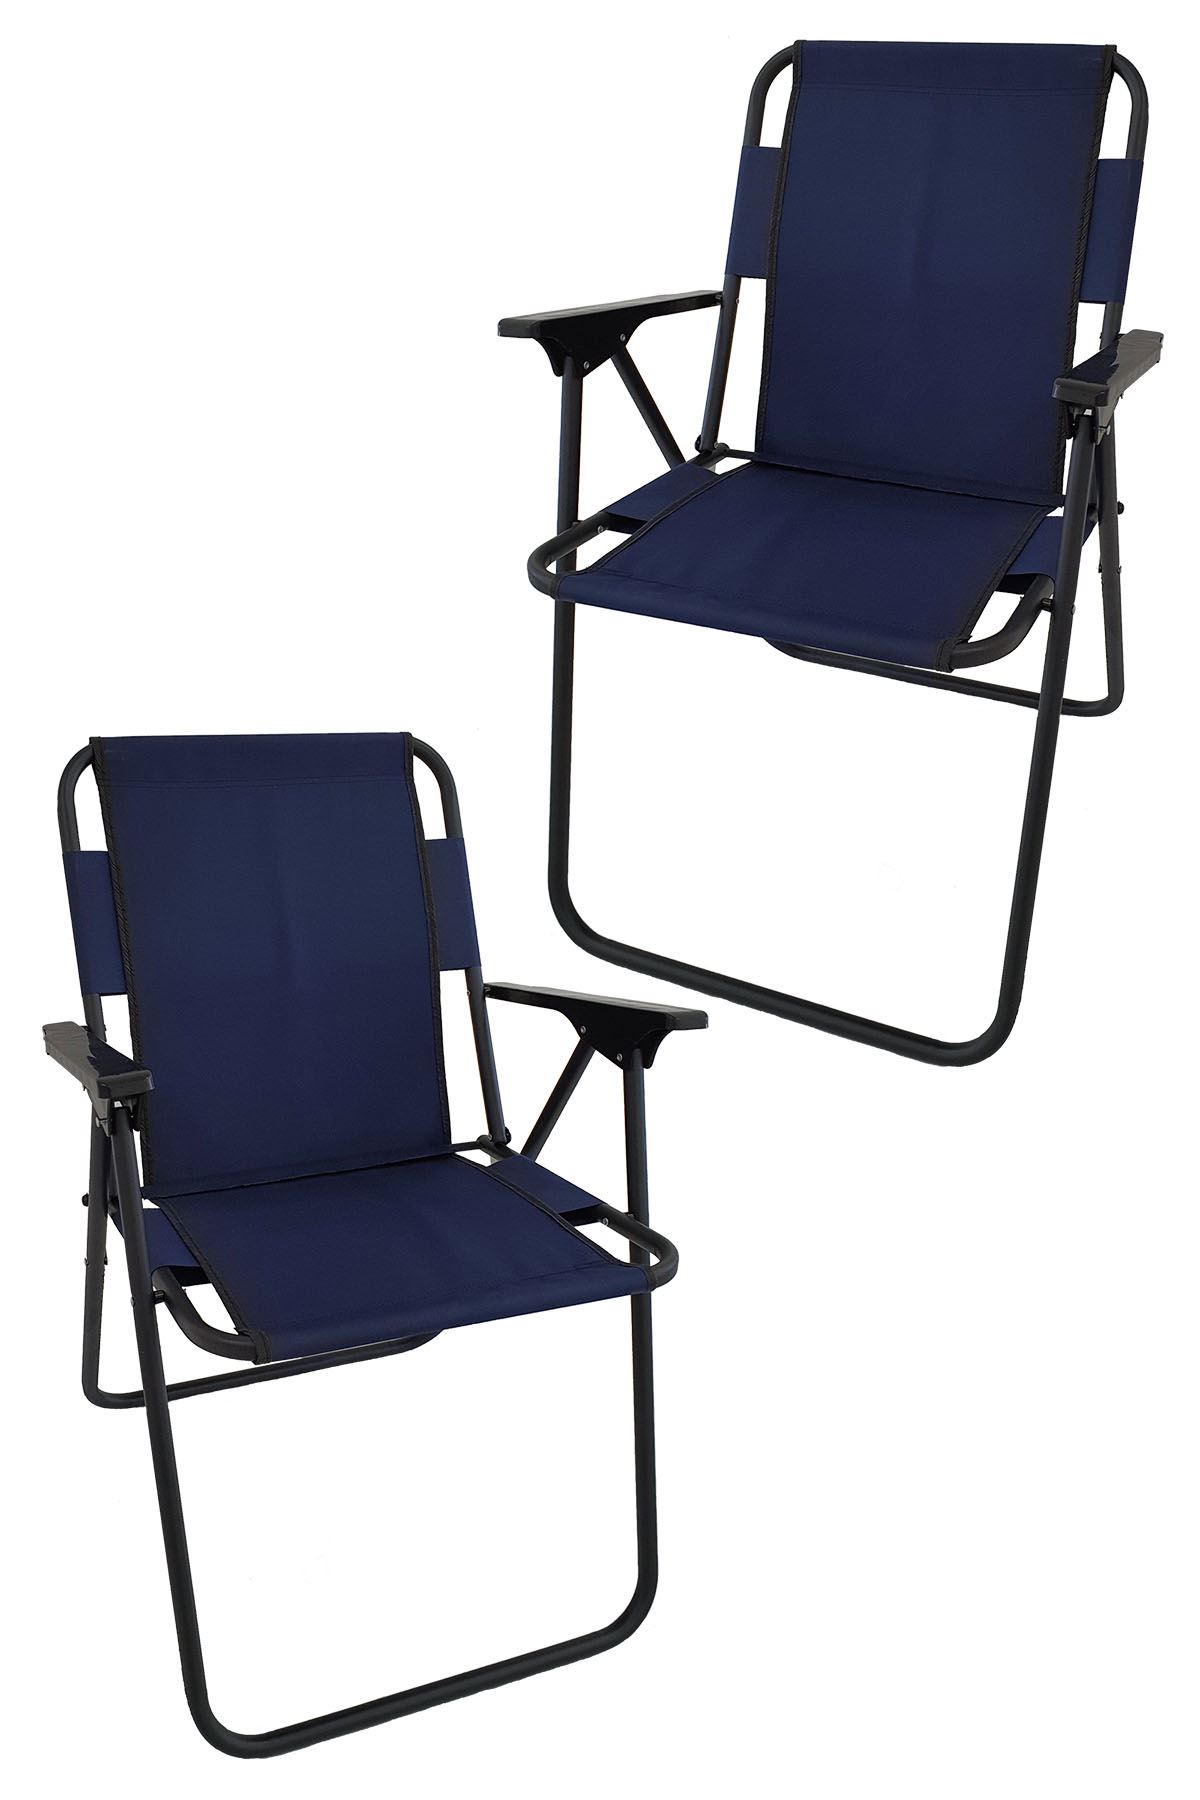 Bofigo 2 Pcs Camping Chair Folding Chair Picnic Chair Beach Chair Navy Blue